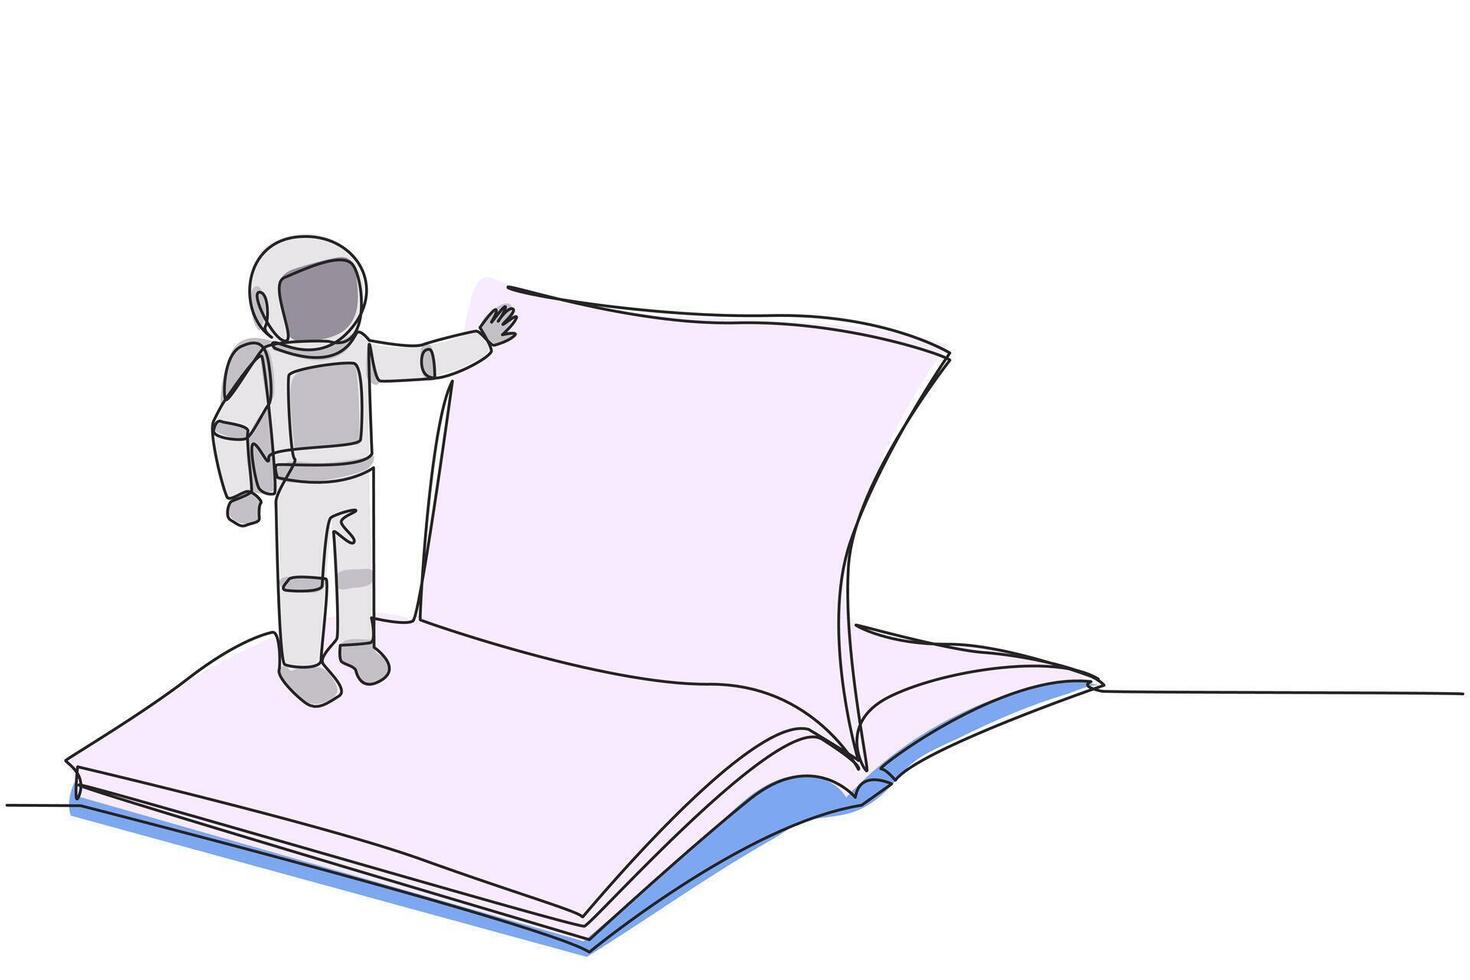 kontinuerlig ett linje teckning astronaut stående över öppen huvudbok vändning sida. läsa långsamt till förstå innehåll av varje sida. läsning ökar insikt. enda linje dra design illustration vektor